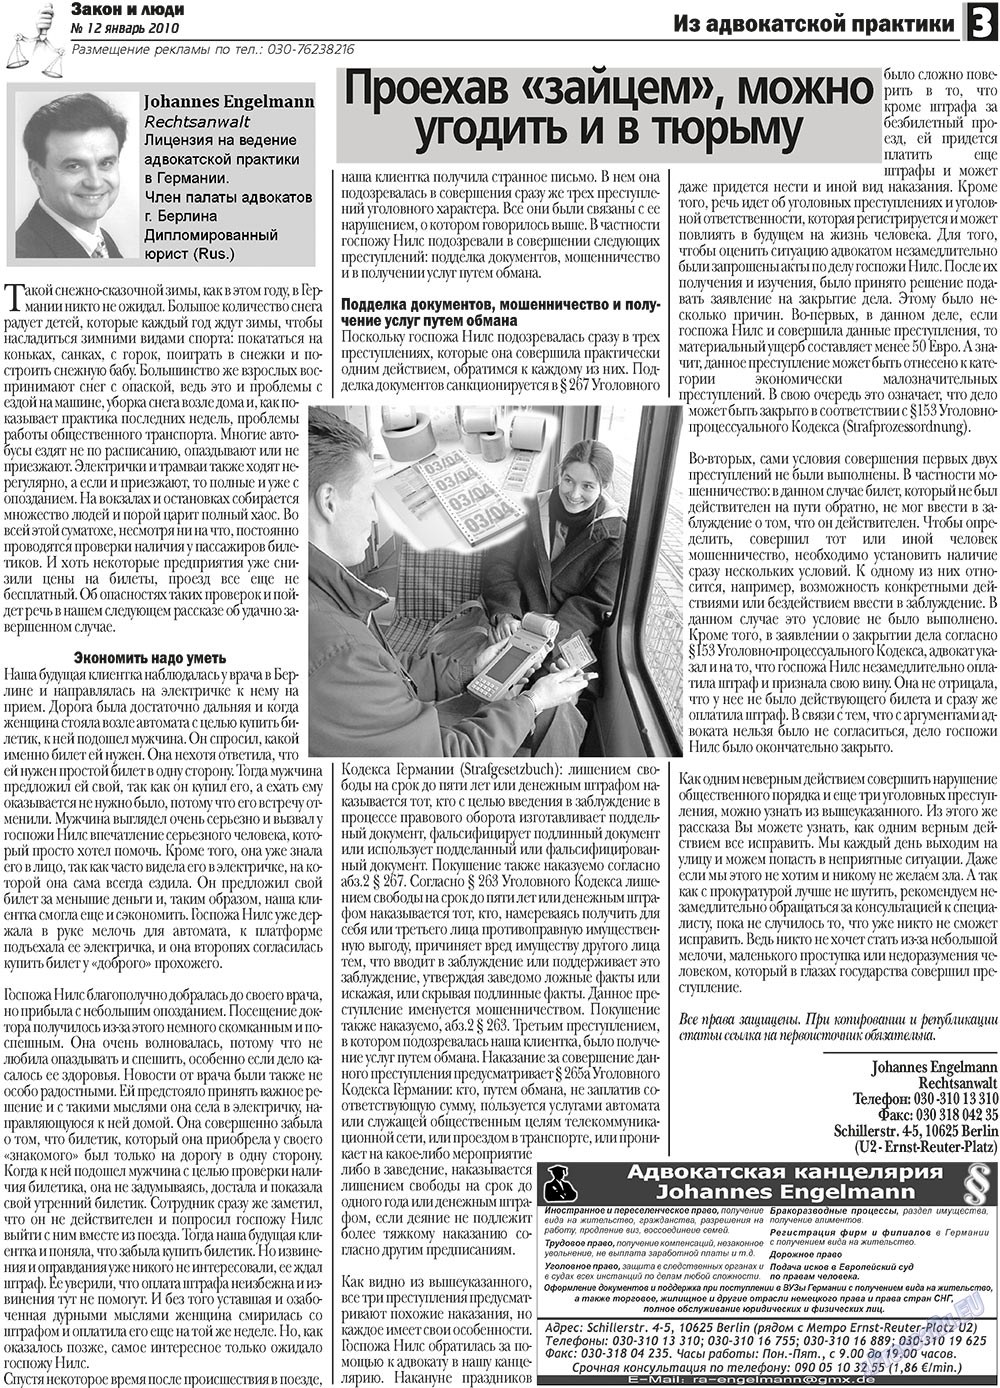 Закон и люди, газета. 2011 №1 стр.3